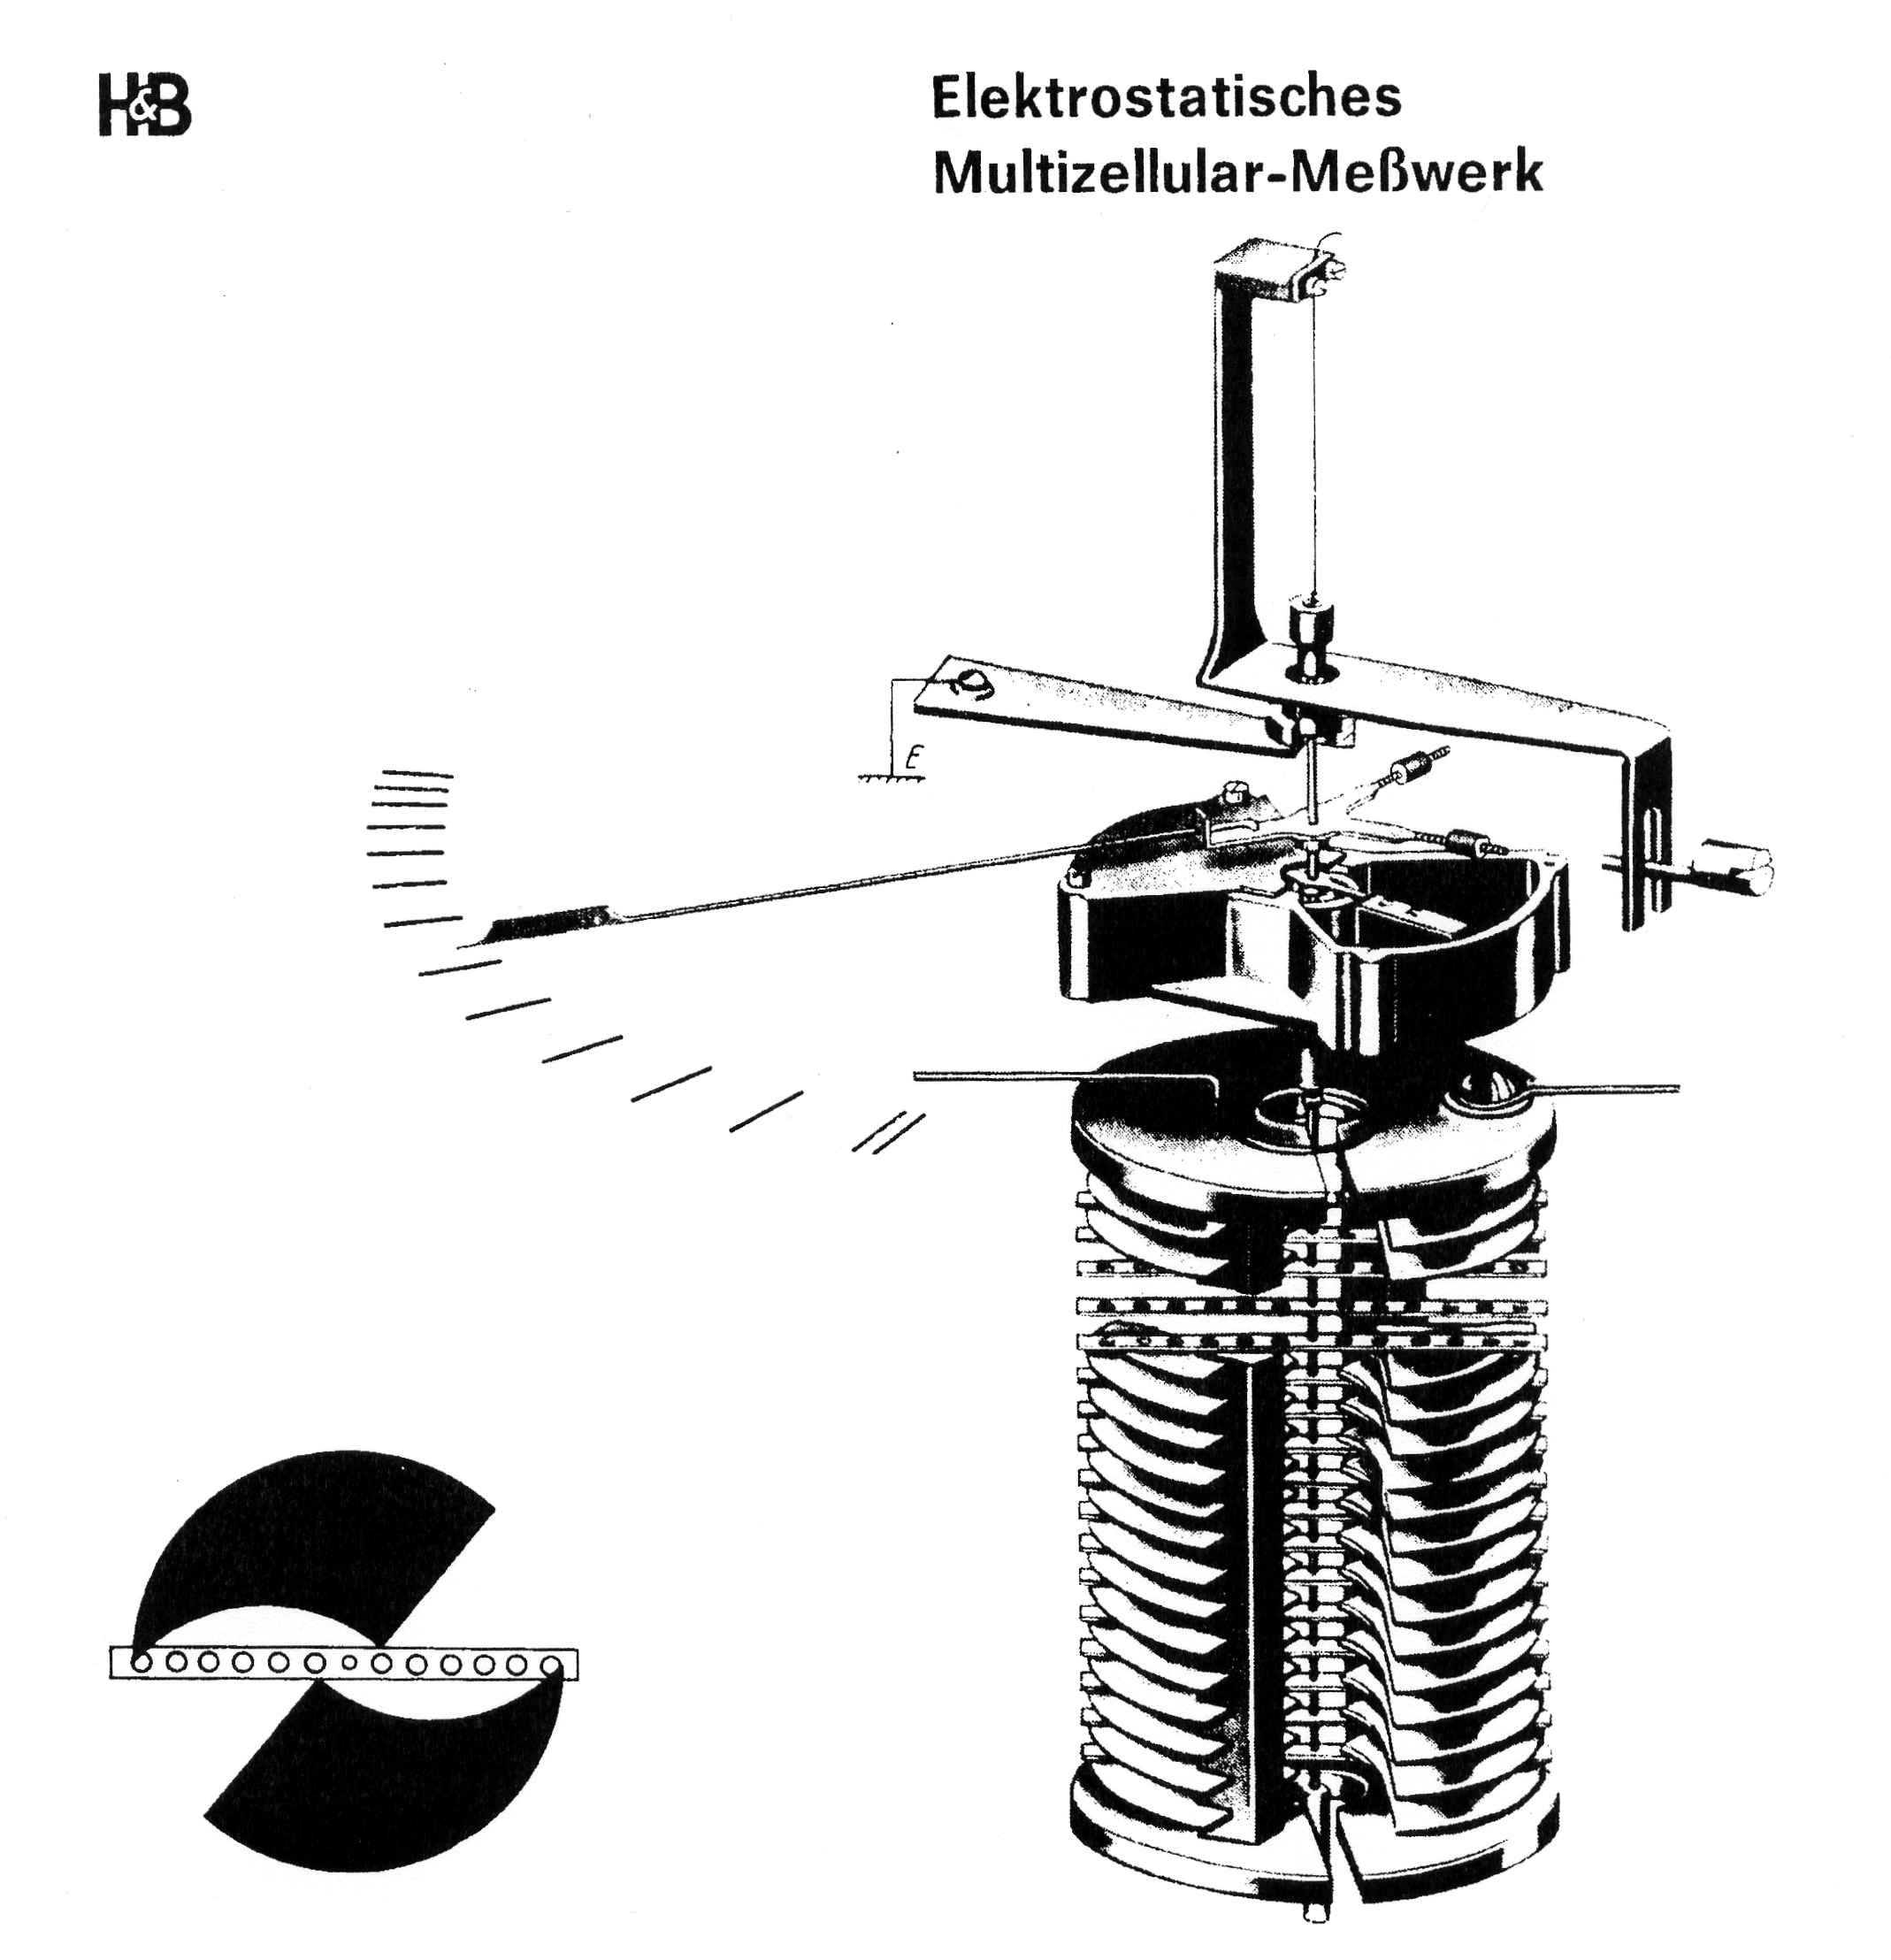 Voltmètre électrostatique multicellulaire
(250 V)